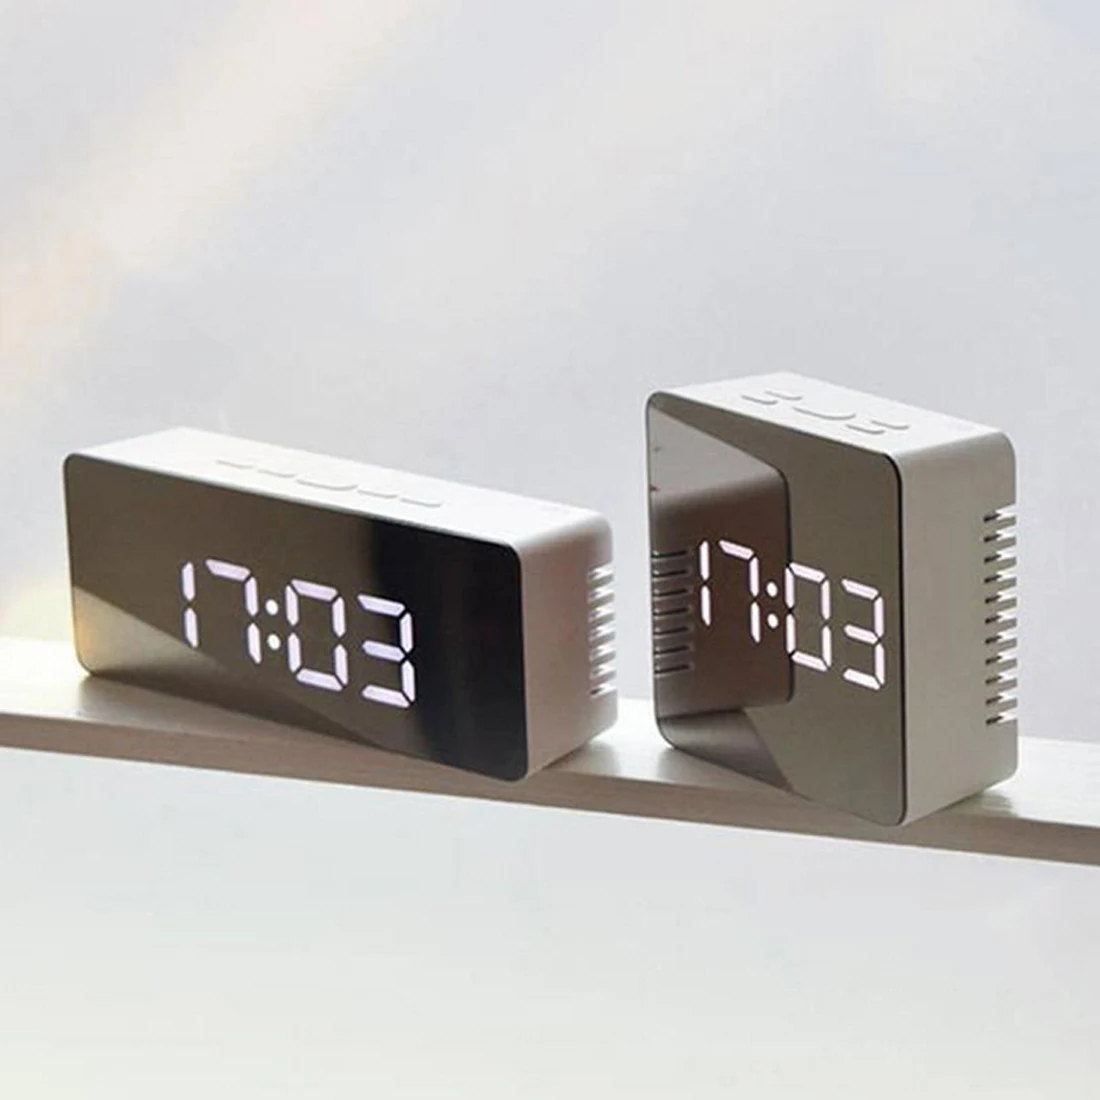 Креативный Многофункциональный светодиодный зеркальный будильник часы цифровые часы Повтор дисплей время ночной светодиодный светильник Настольный будильник